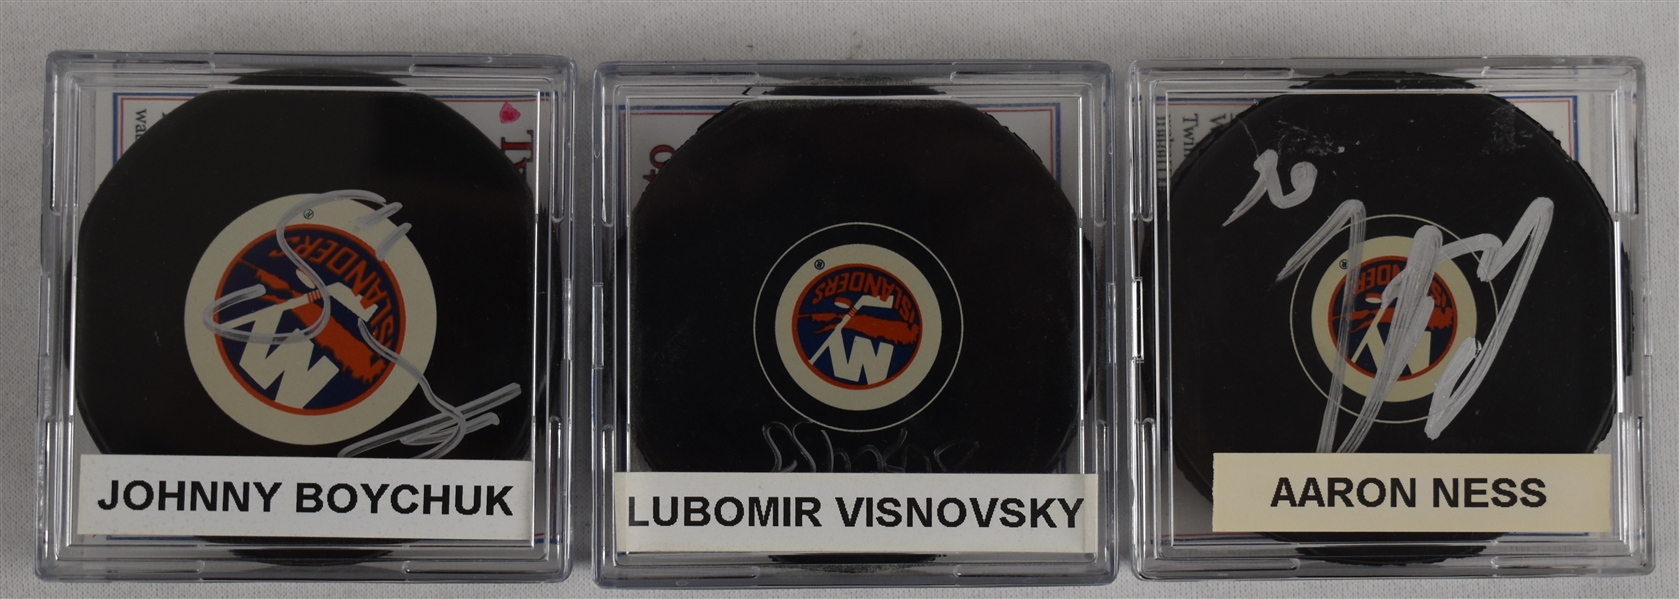 Boychuk Visnovsky & Ness Lot of 3 Autographed Hockey Pucks w/Case